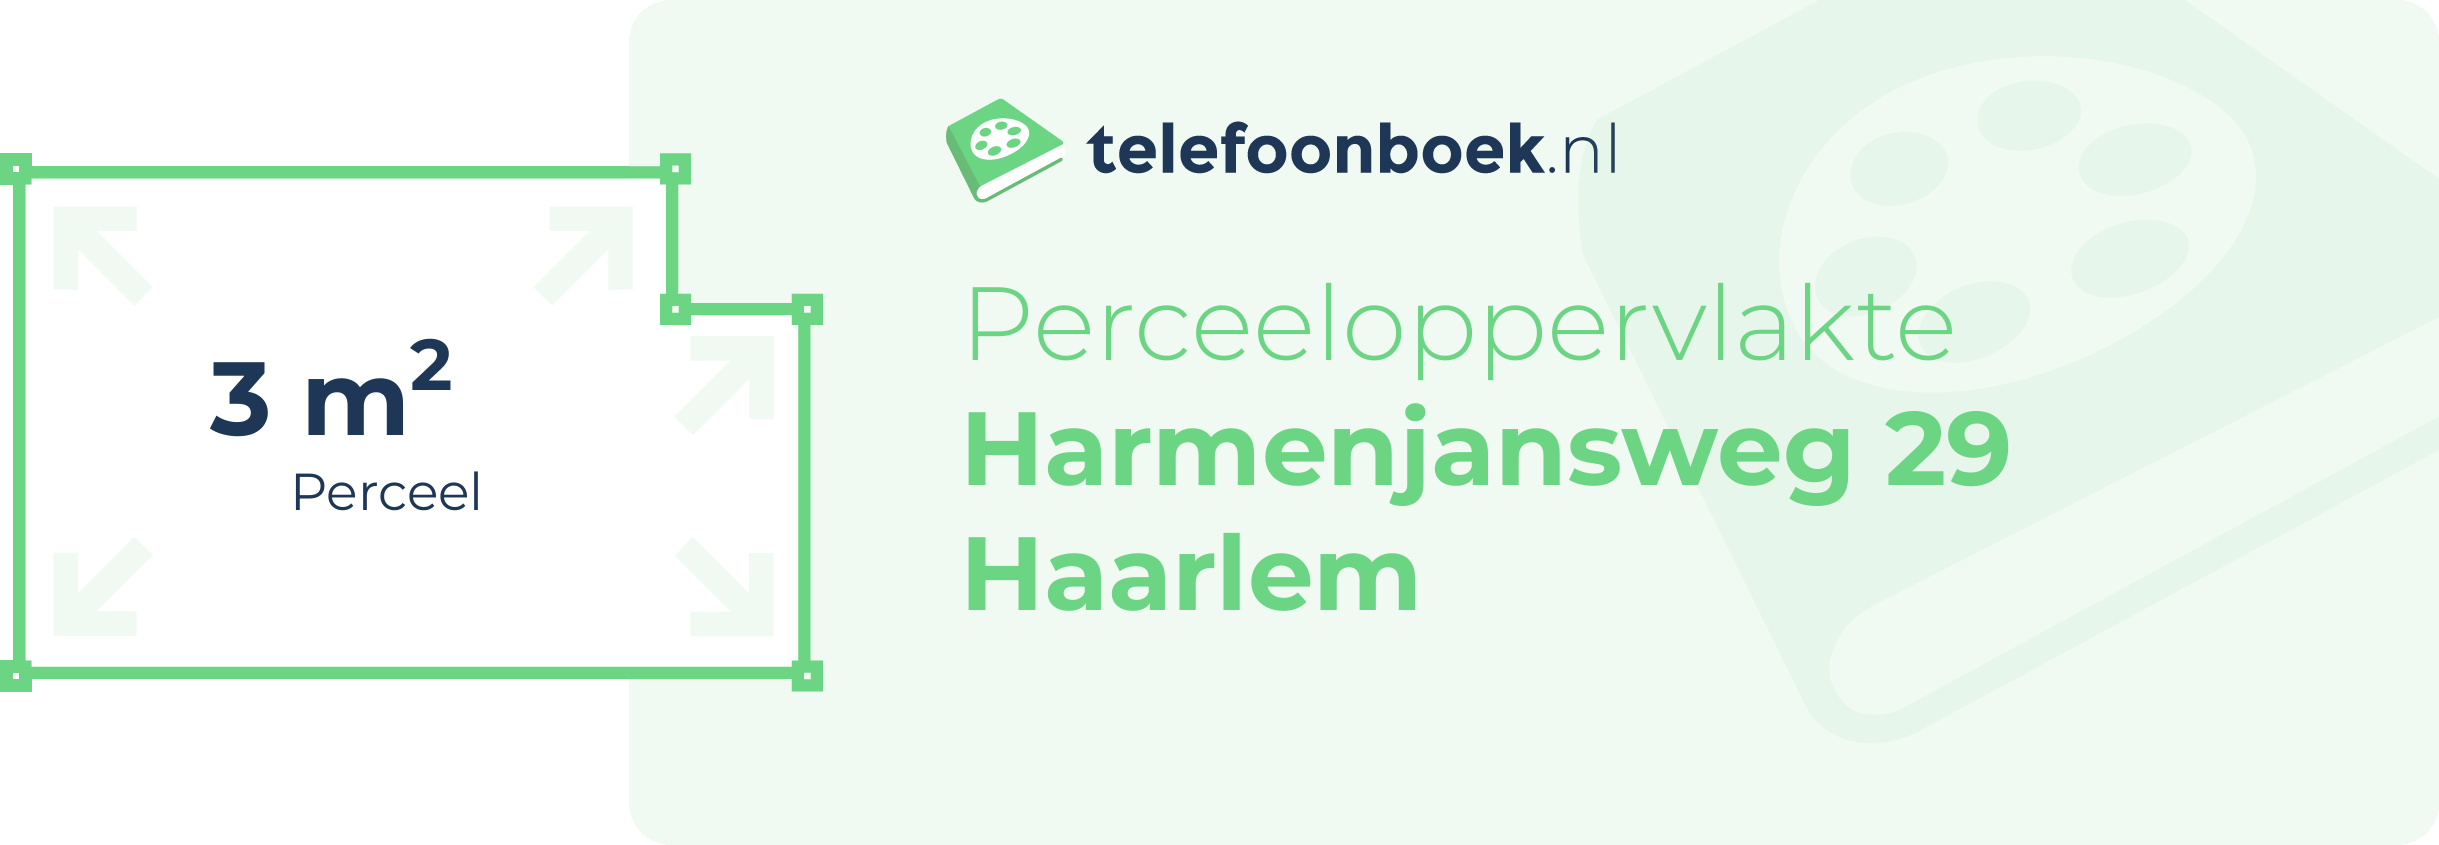 Perceeloppervlakte Harmenjansweg 29 Haarlem